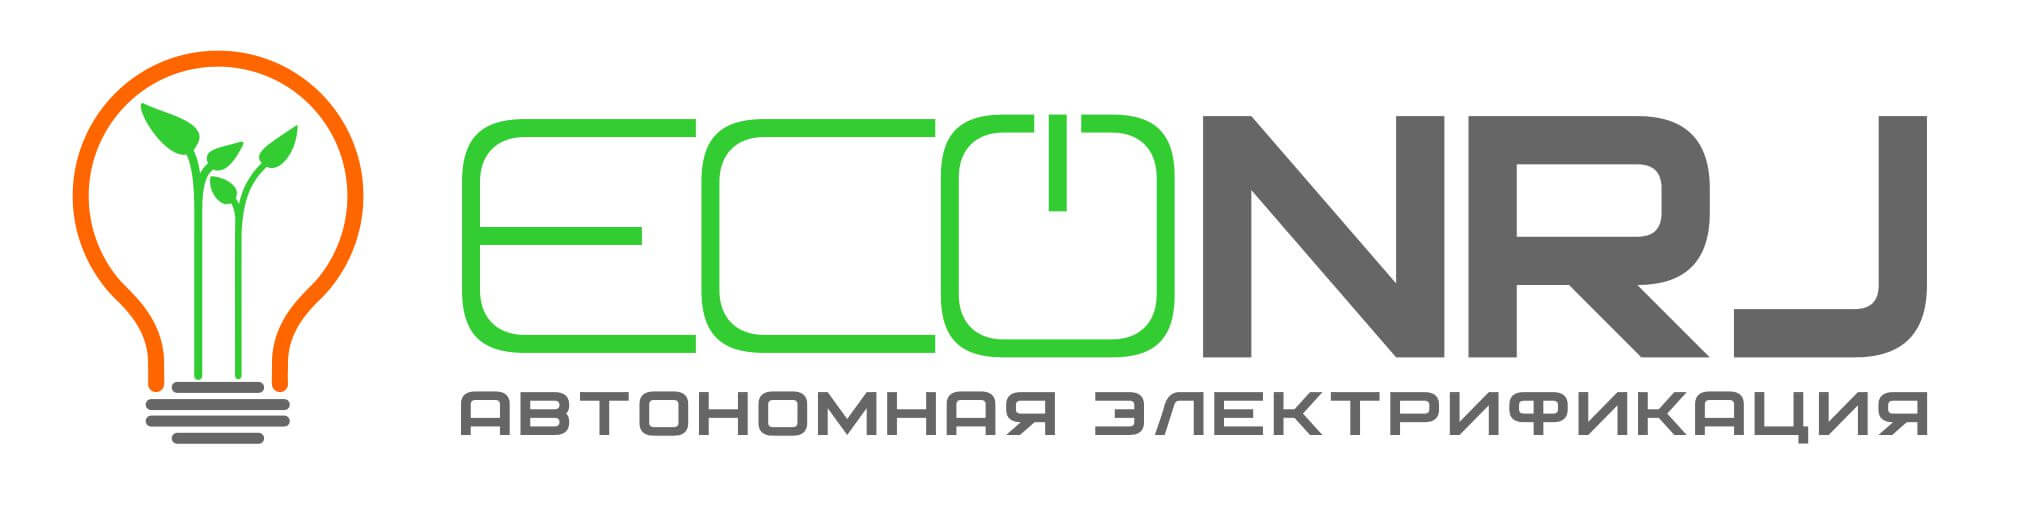 ECONRJ.ru